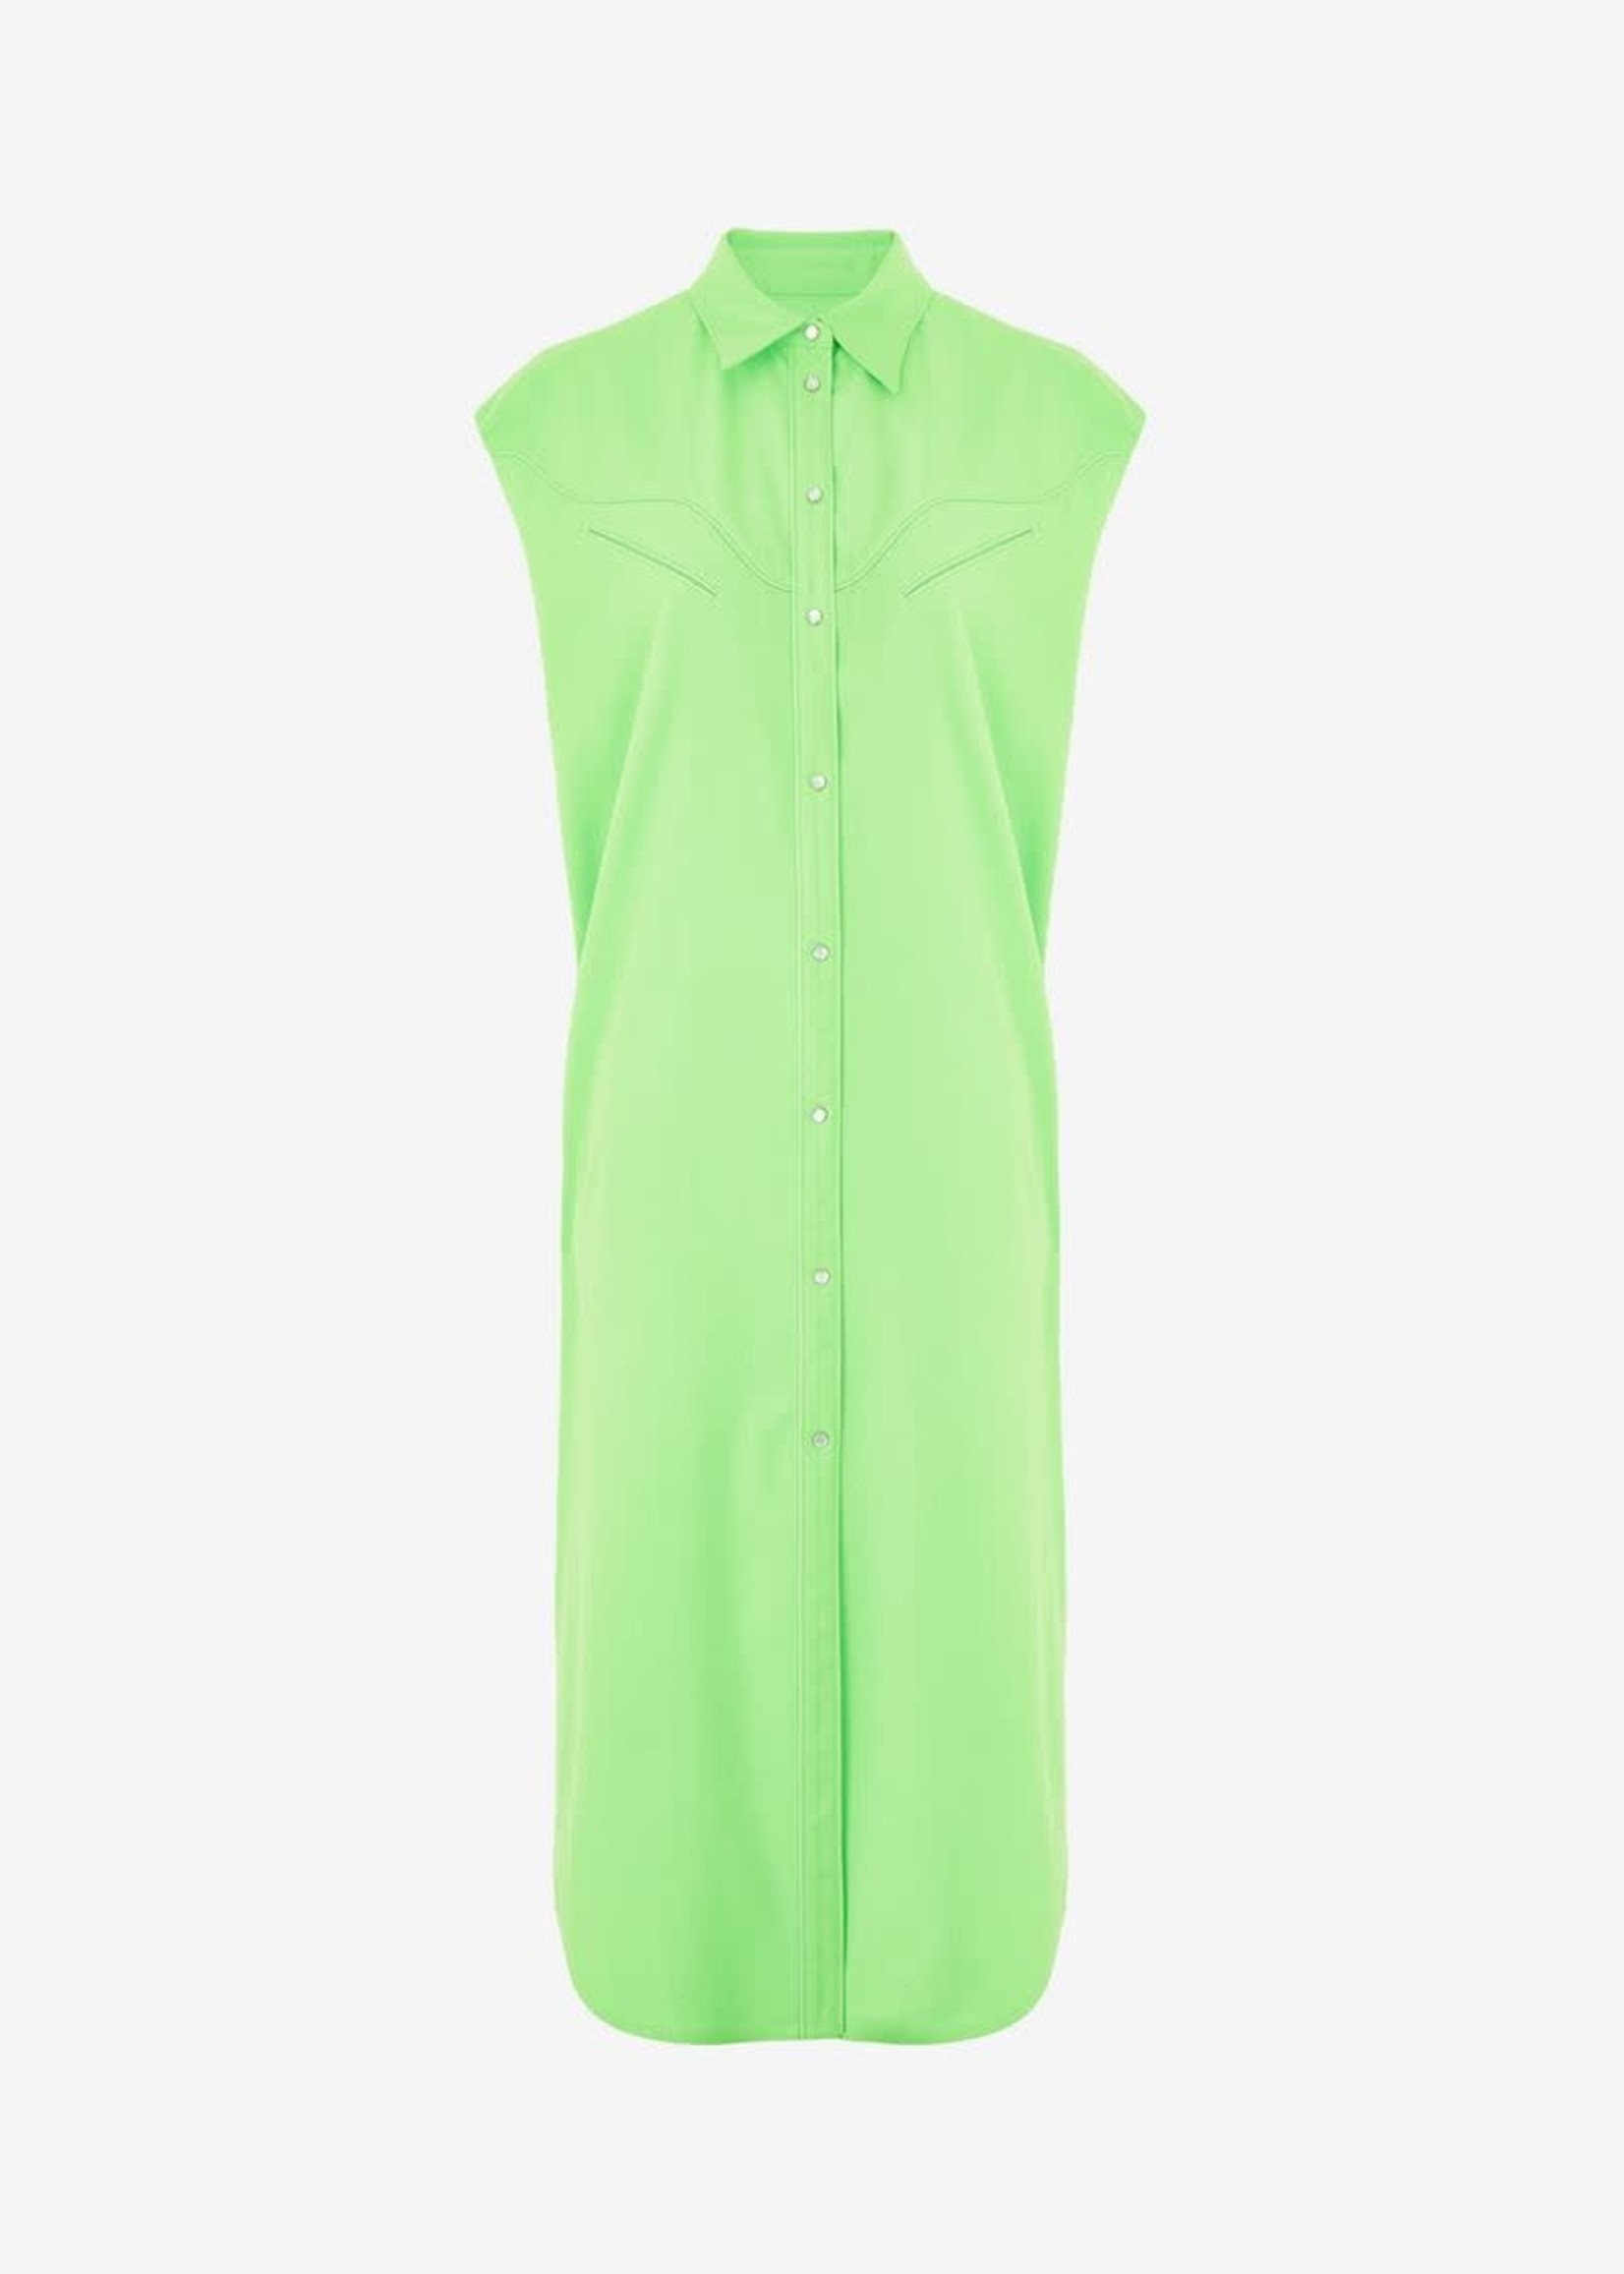 MM6 MAISON MARGIELA Neon Green Western Sleeveless Shirt Dress